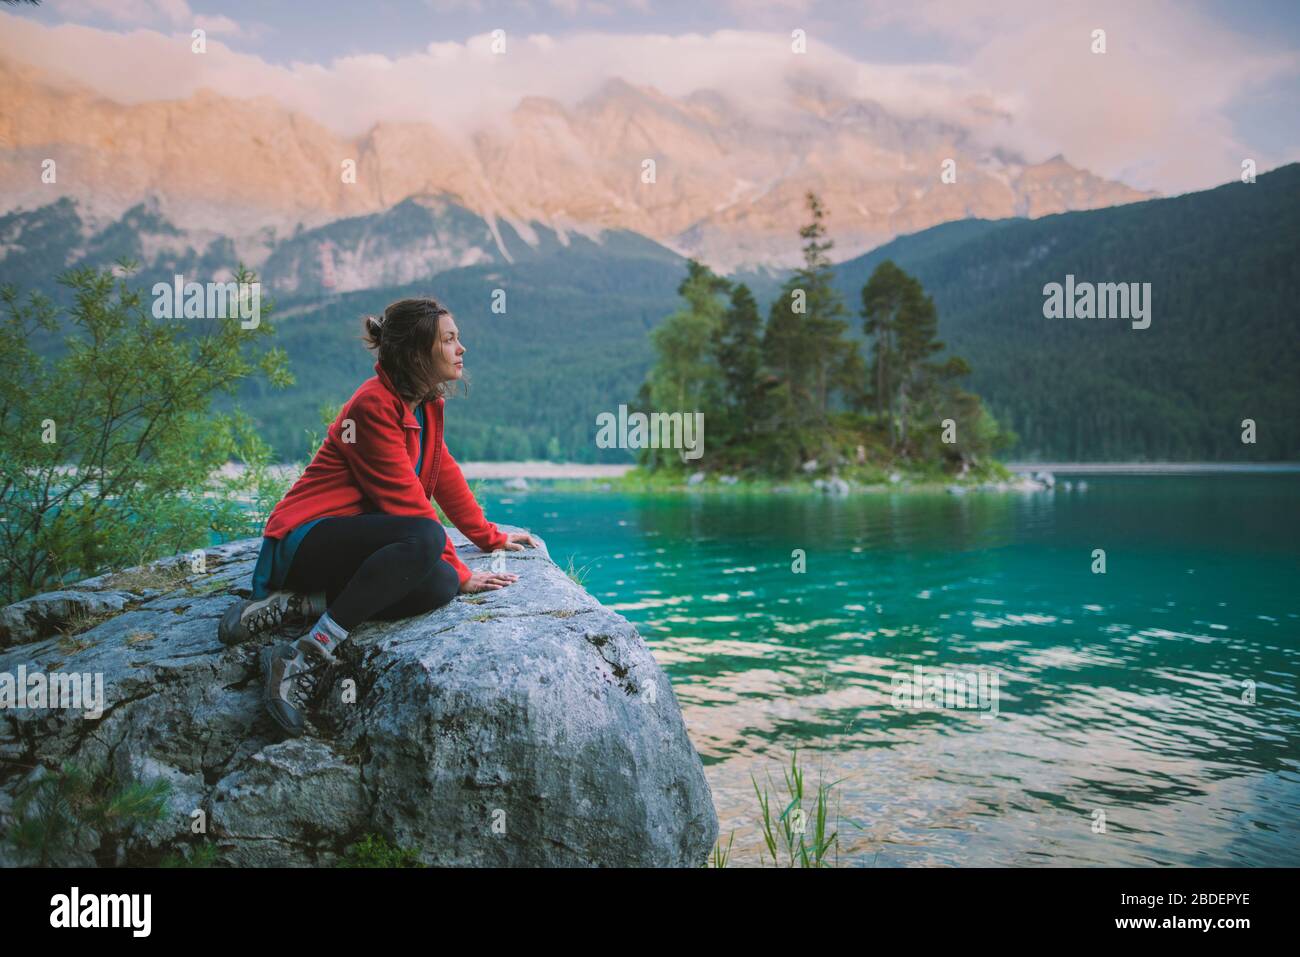 Deutschland, Bayern, Eibsee, Junge Frau auf Felsen sitzend und mit Blick auf den malerischen Blick am EibseeÂ See in den bayerischen Alpen Stockfoto